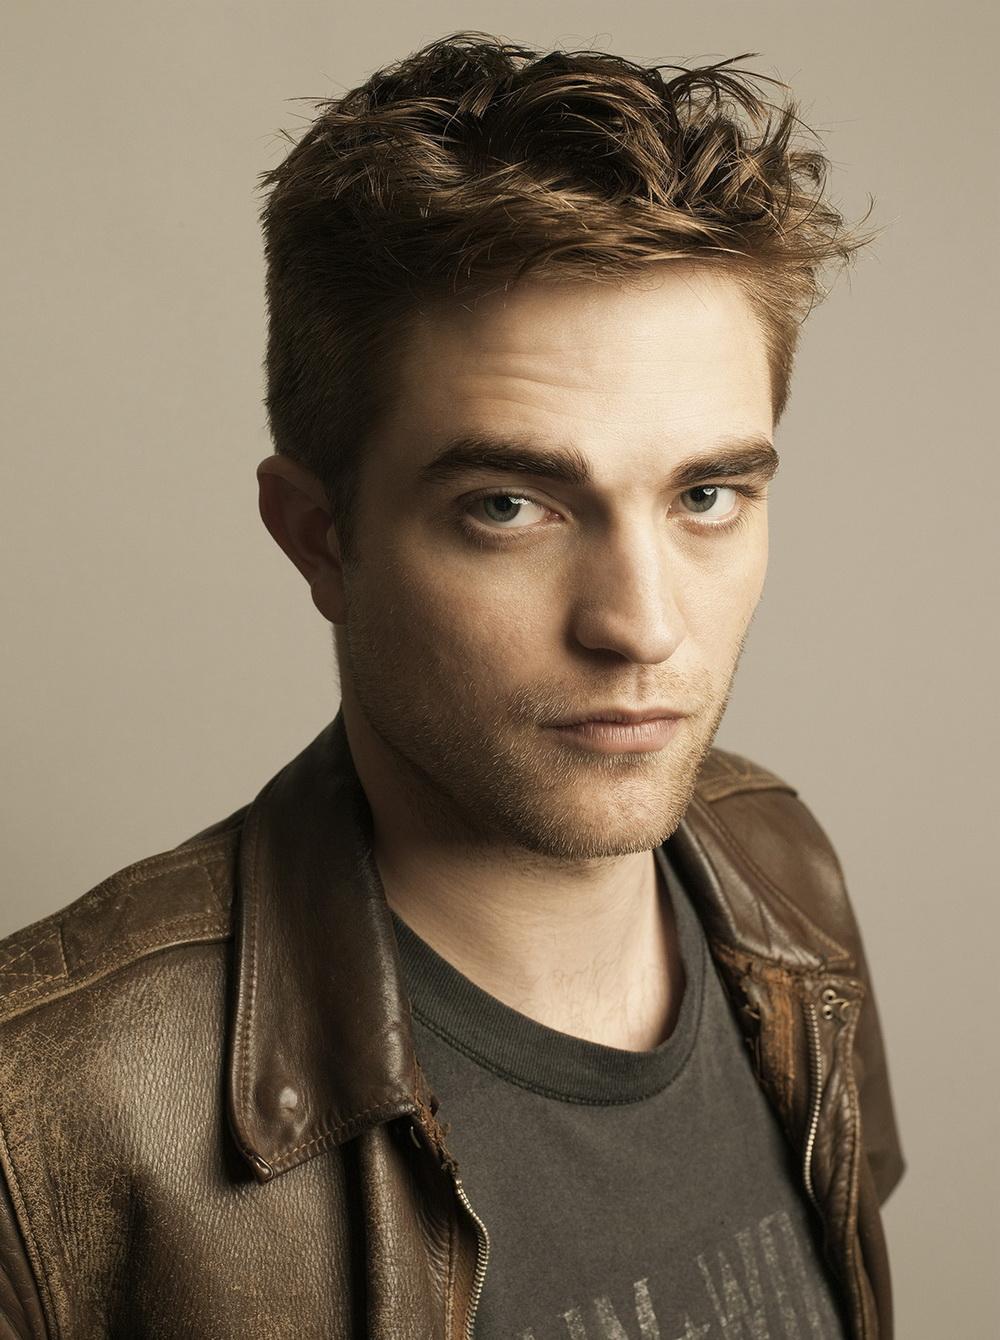 Photo №8905 Robert Pattinson.